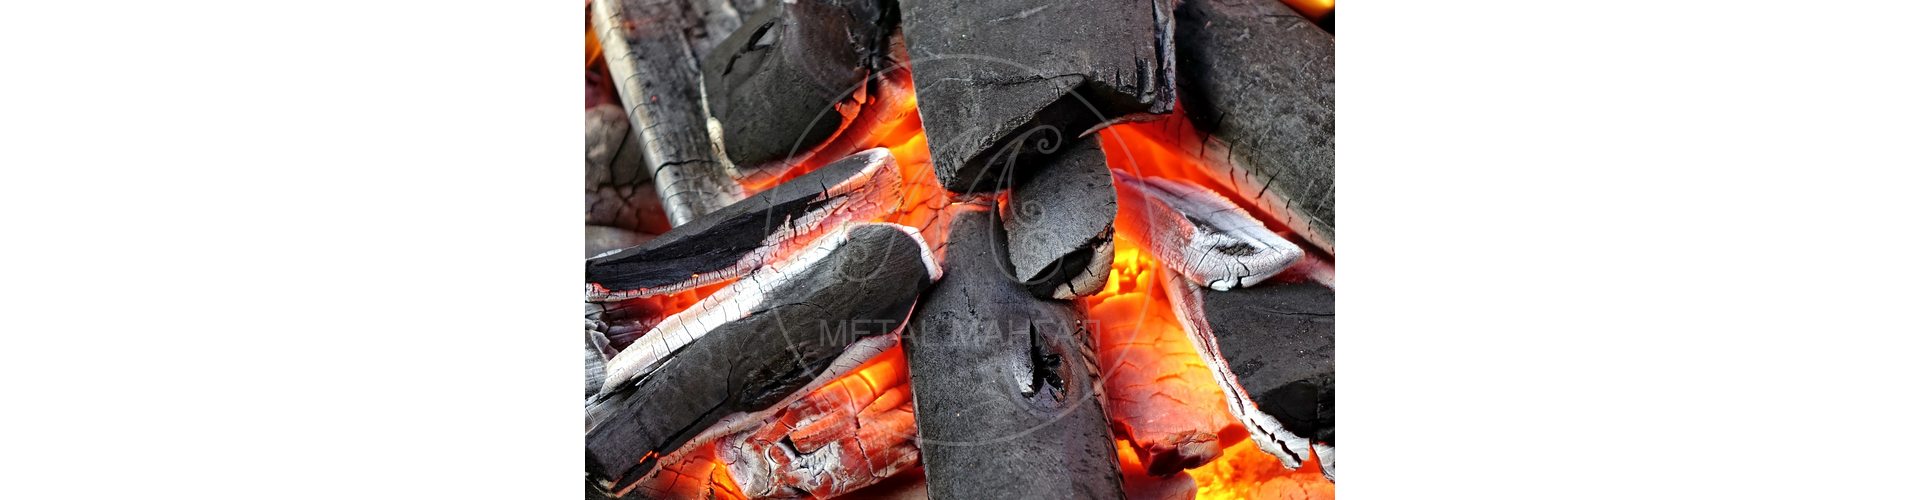 Изготовление древесного угля своими руками – как сделать смесь для гриля в в домашних условиях